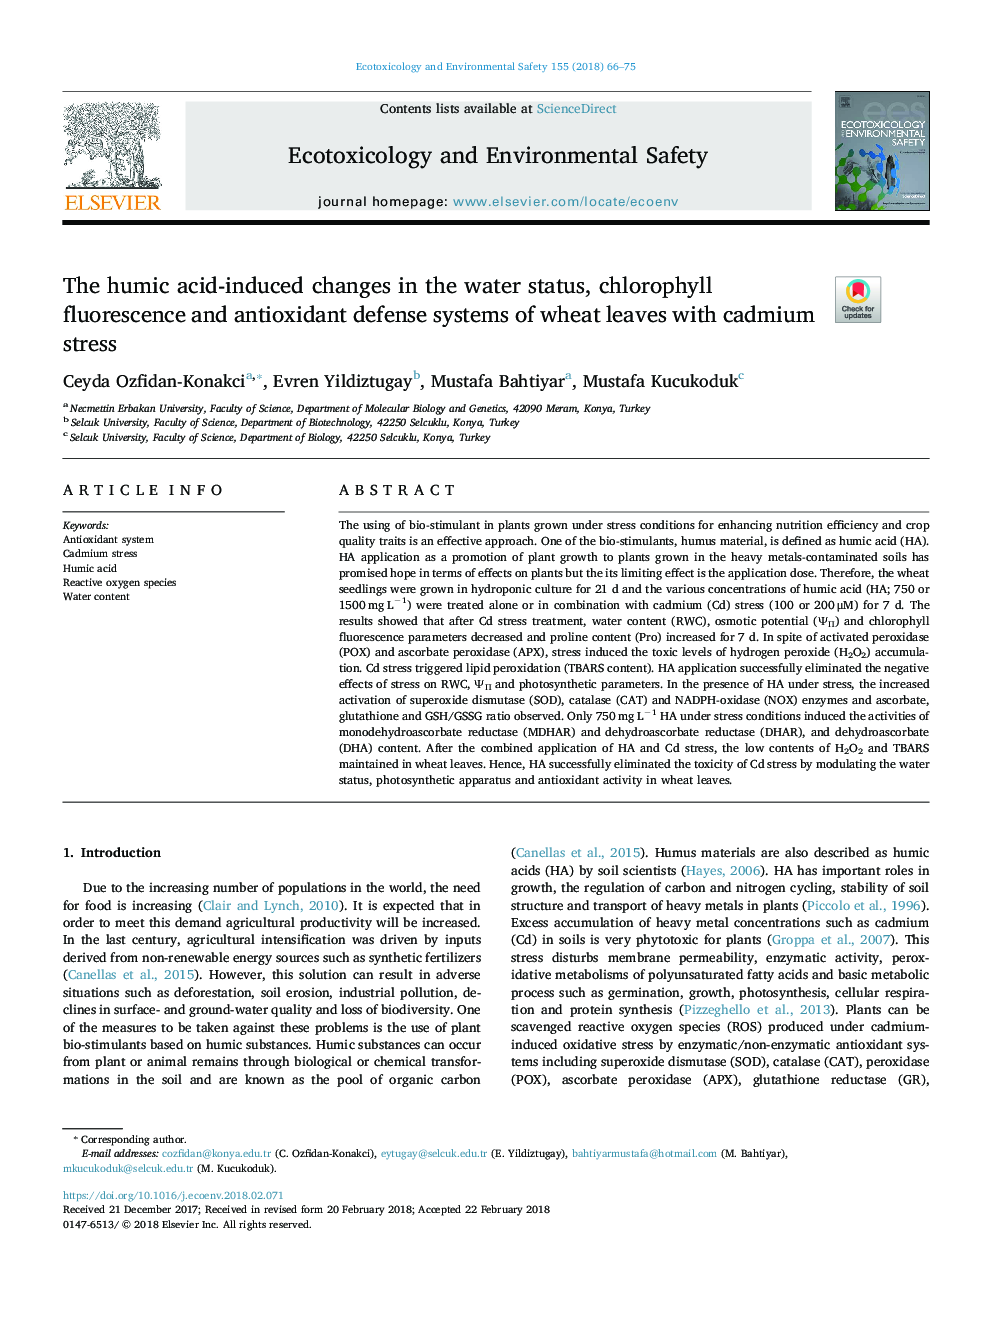 تغییرات ناشی از اسید هیمیک در وضعیت آب، فلورسانس کلروفیل و سیستم های دفاع آنتی اکسیدانی برگ های گندم با استرس کادمیوم 